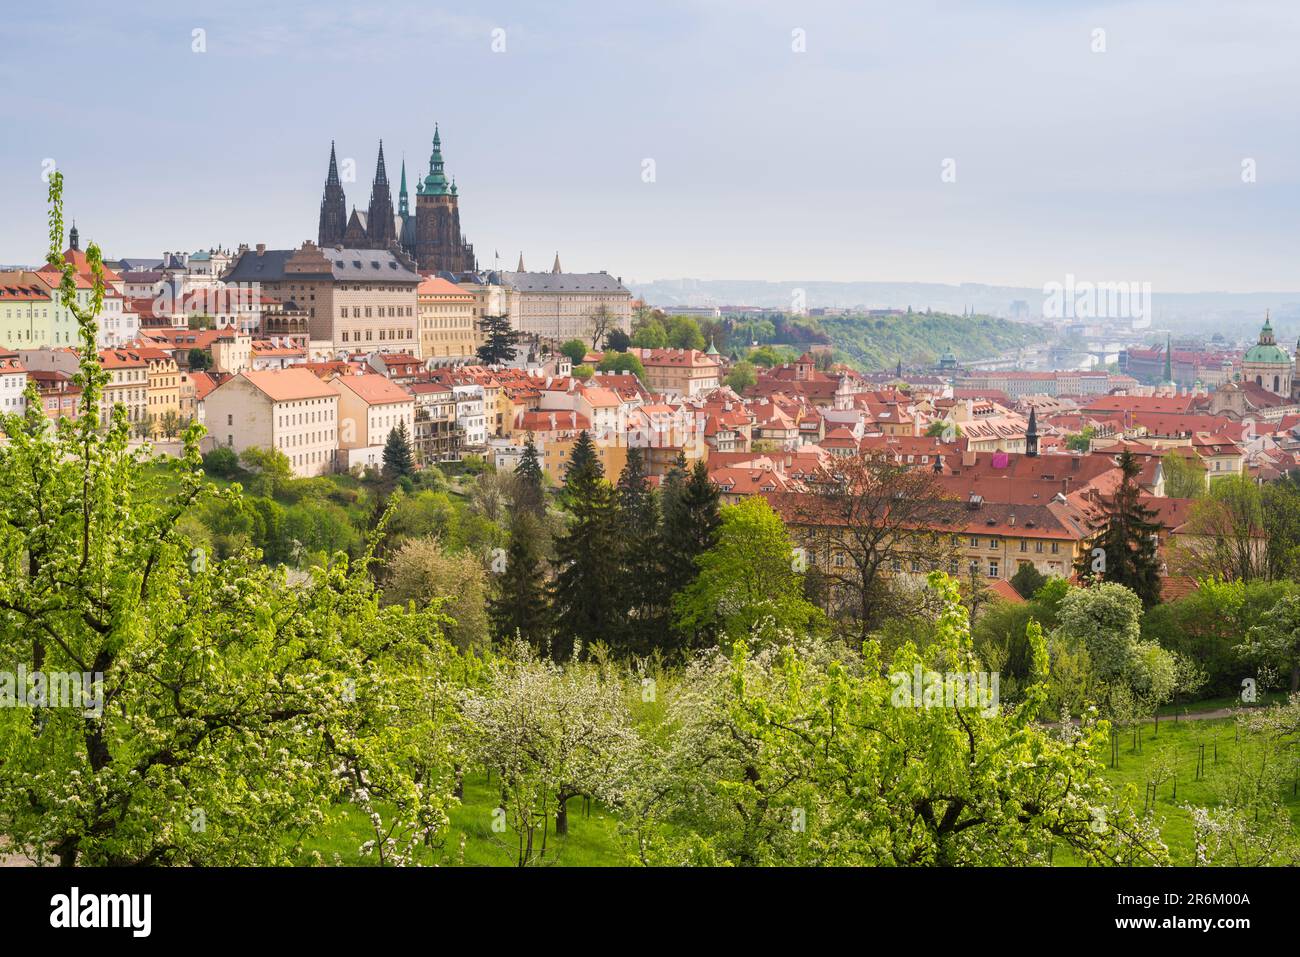 Château de Prague et jardins de Patrin au printemps, Prague, Bohême, République Tchèque (Tchéquie), Europe Banque D'Images